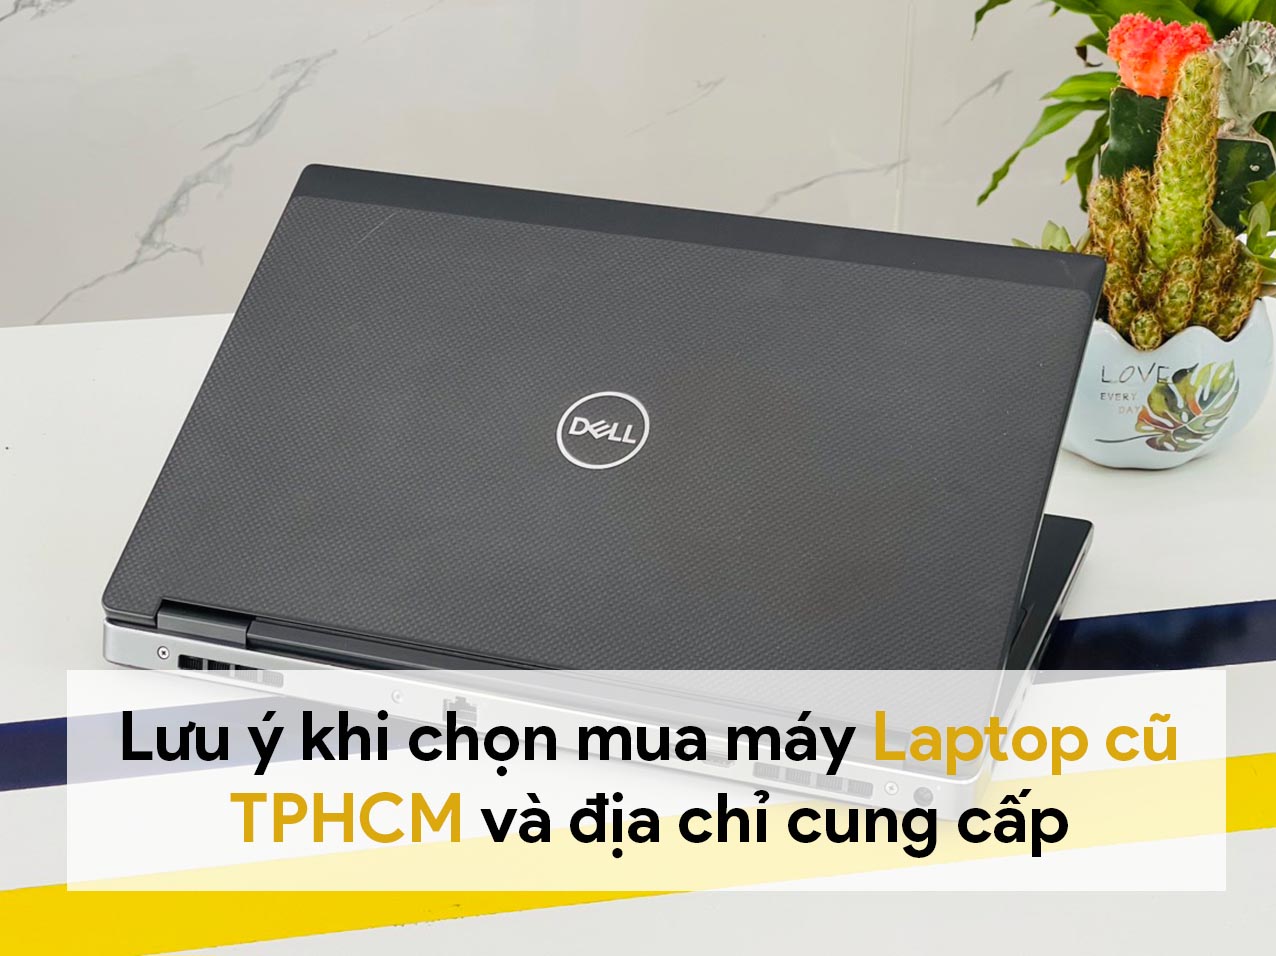 Lưu ý khi chọn mua máy laptop cũ TPHCM và địa chỉ cung cấp 